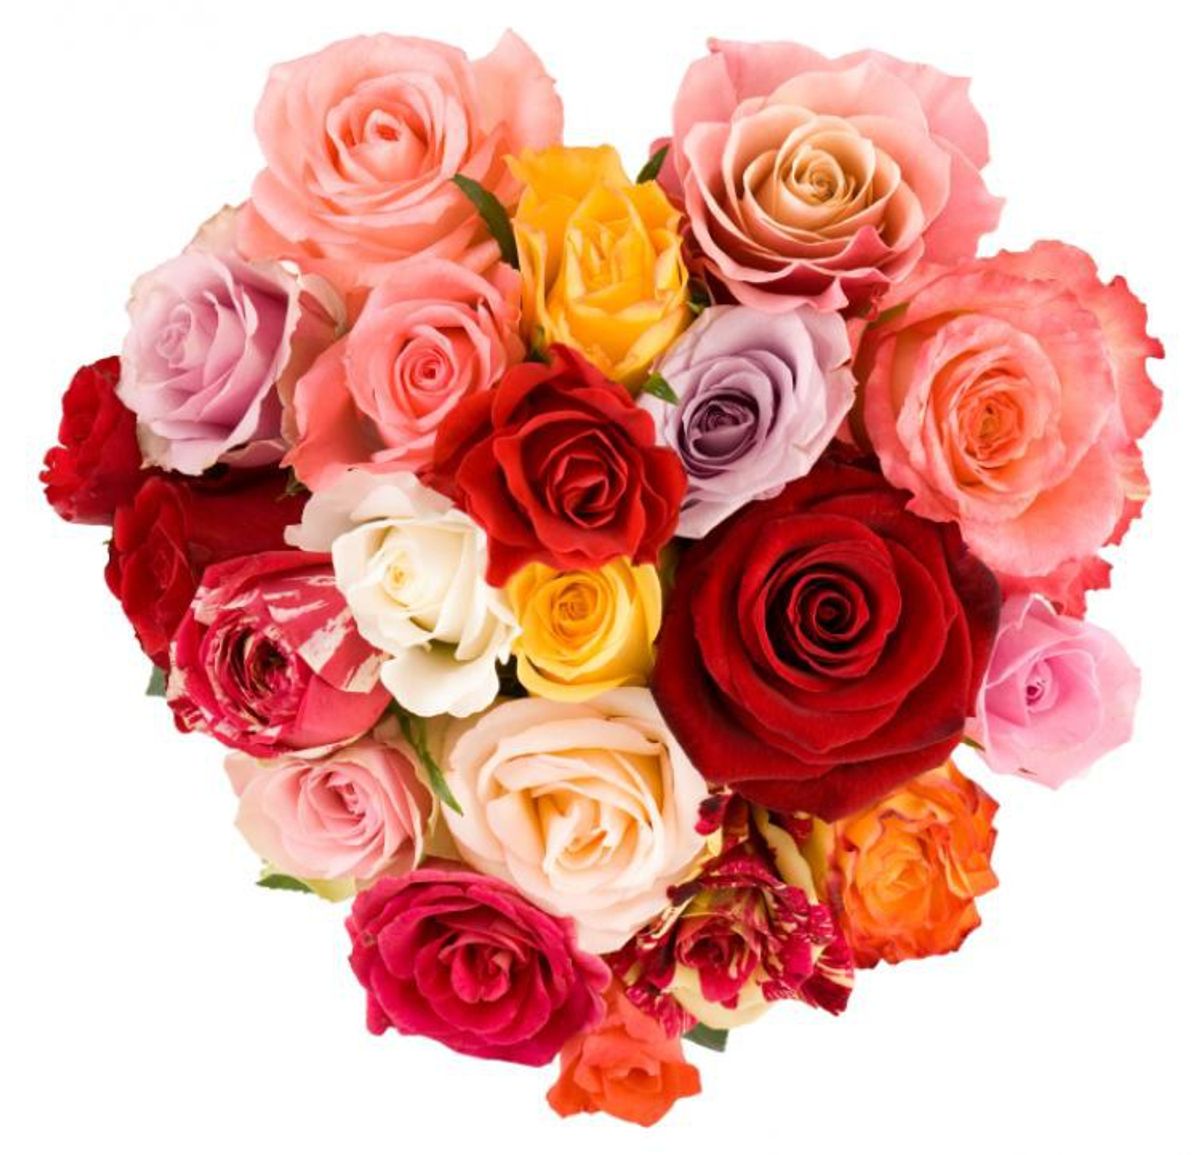 10 Unforgettable Valentine's Day Gifts